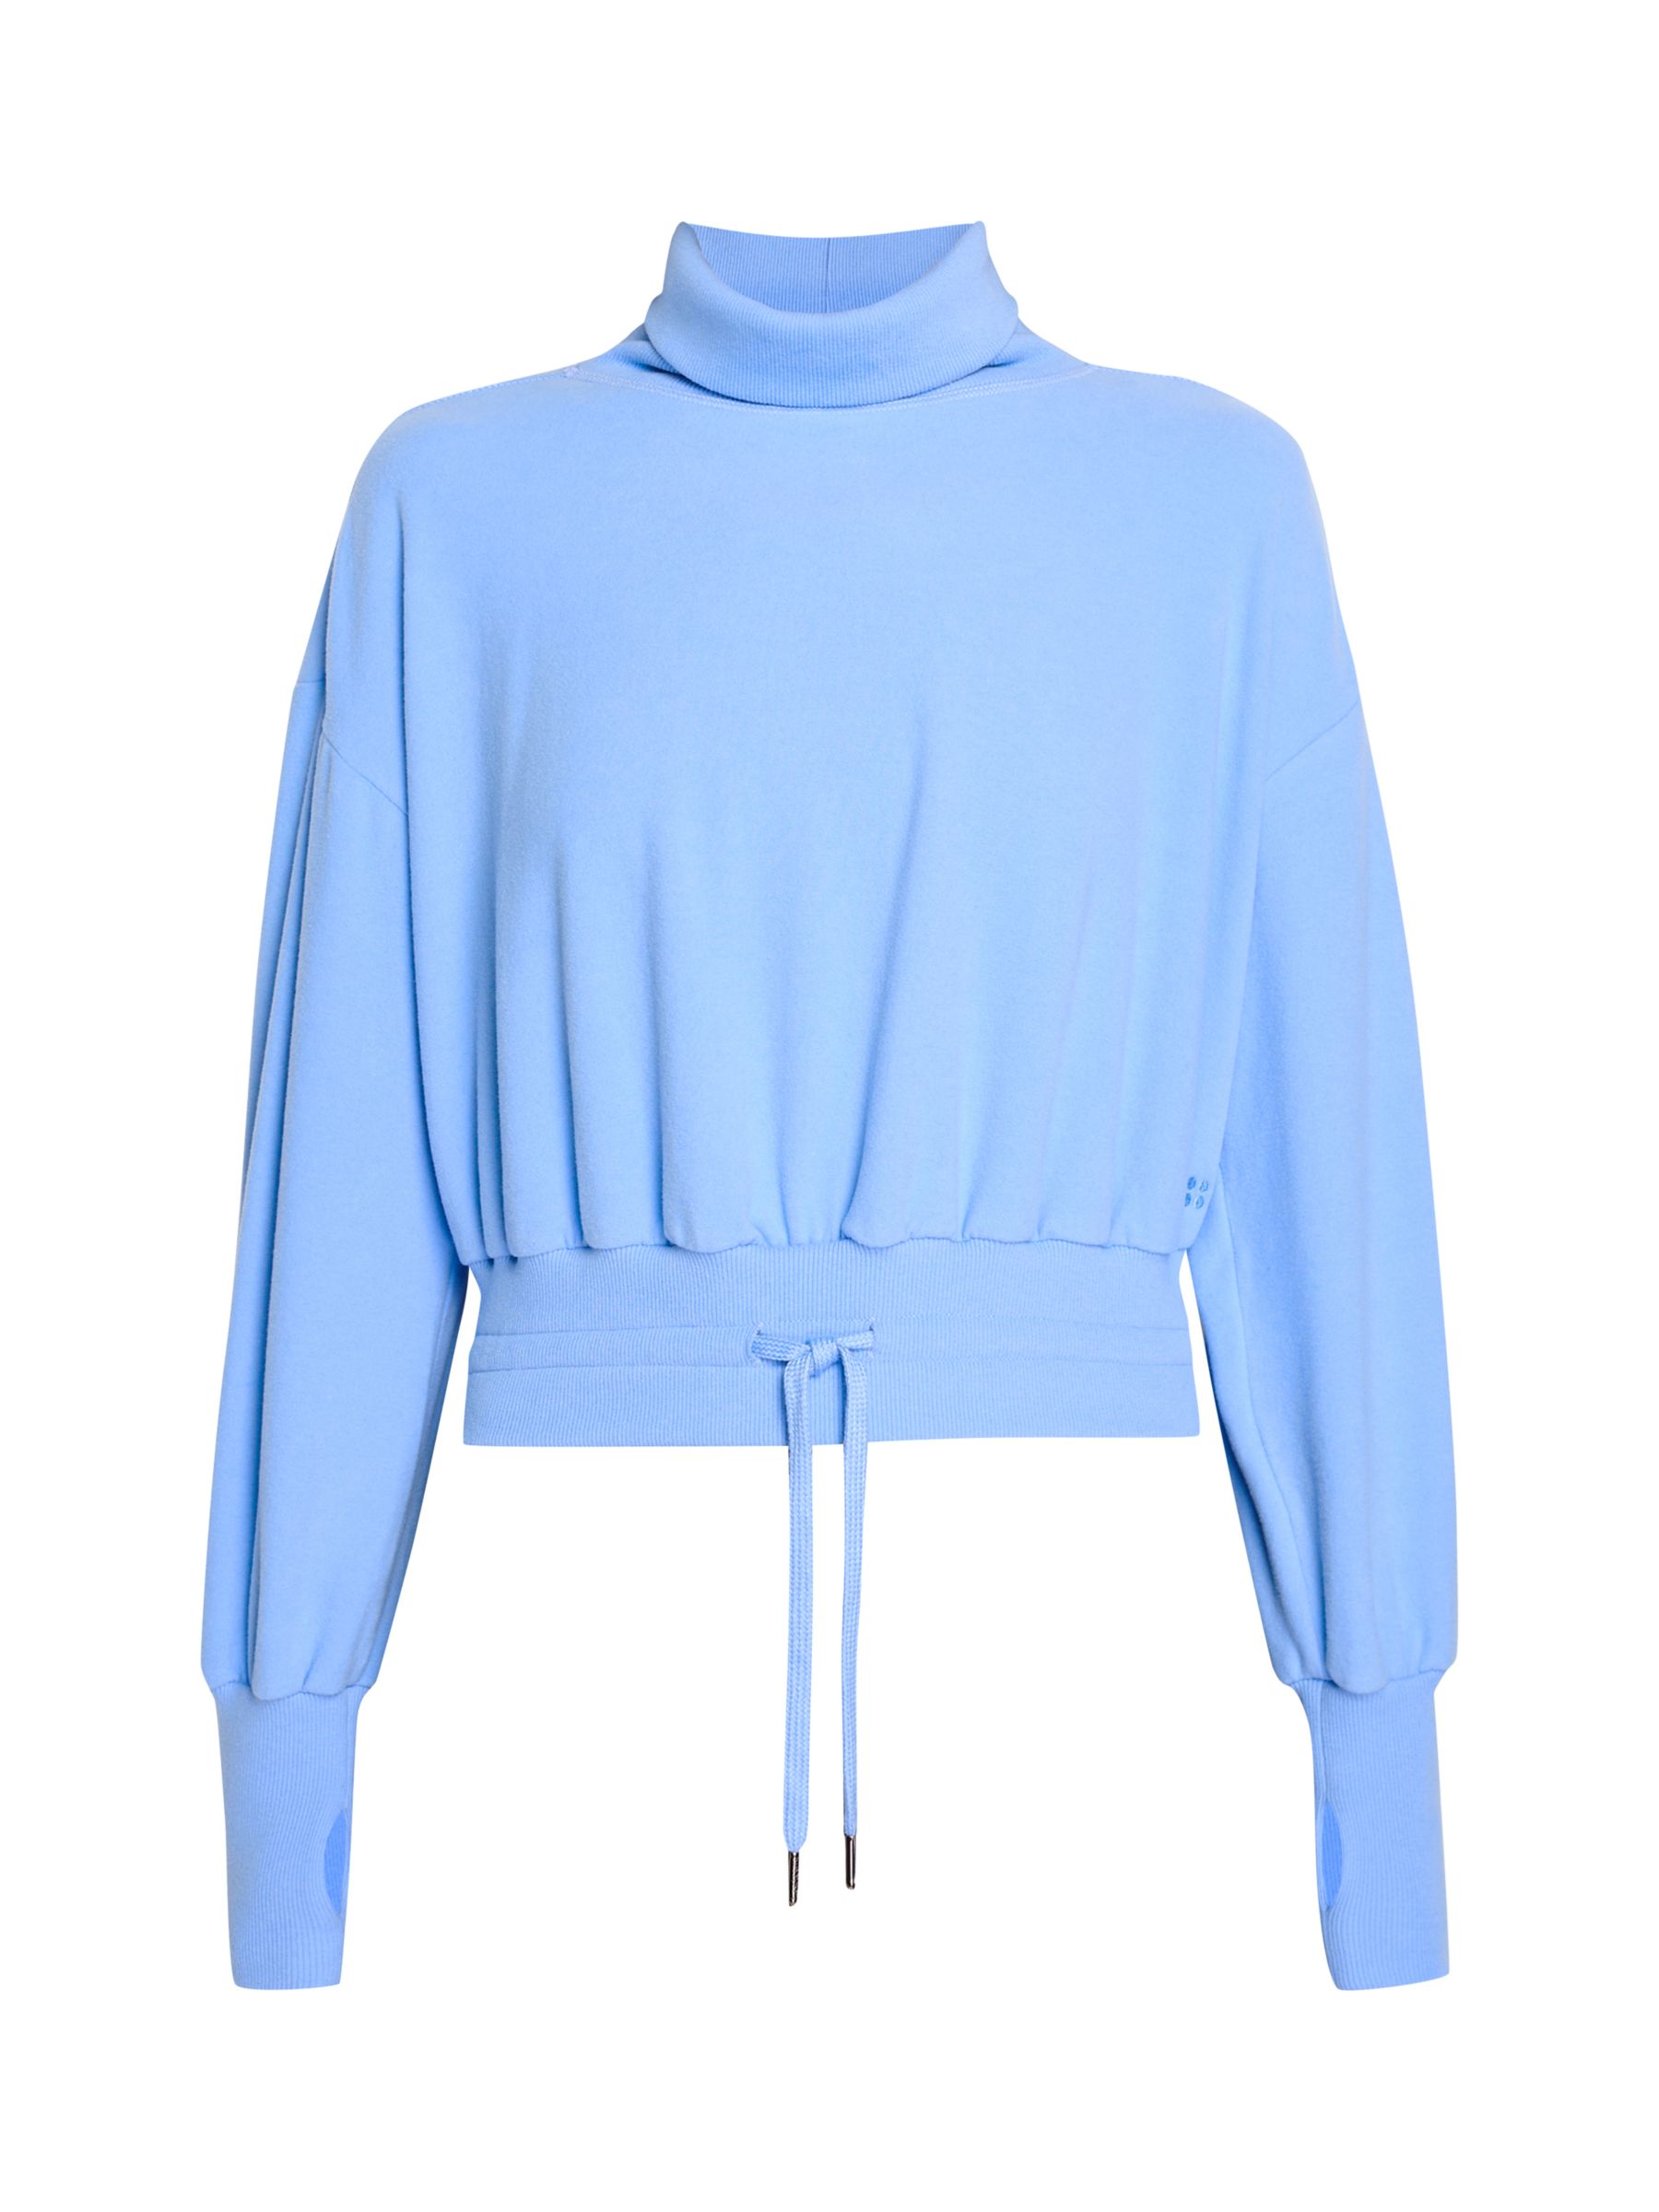 Sweaty Betty Melody Luxe Fleece Sweatshirt, Filter Blue at John Lewis ...